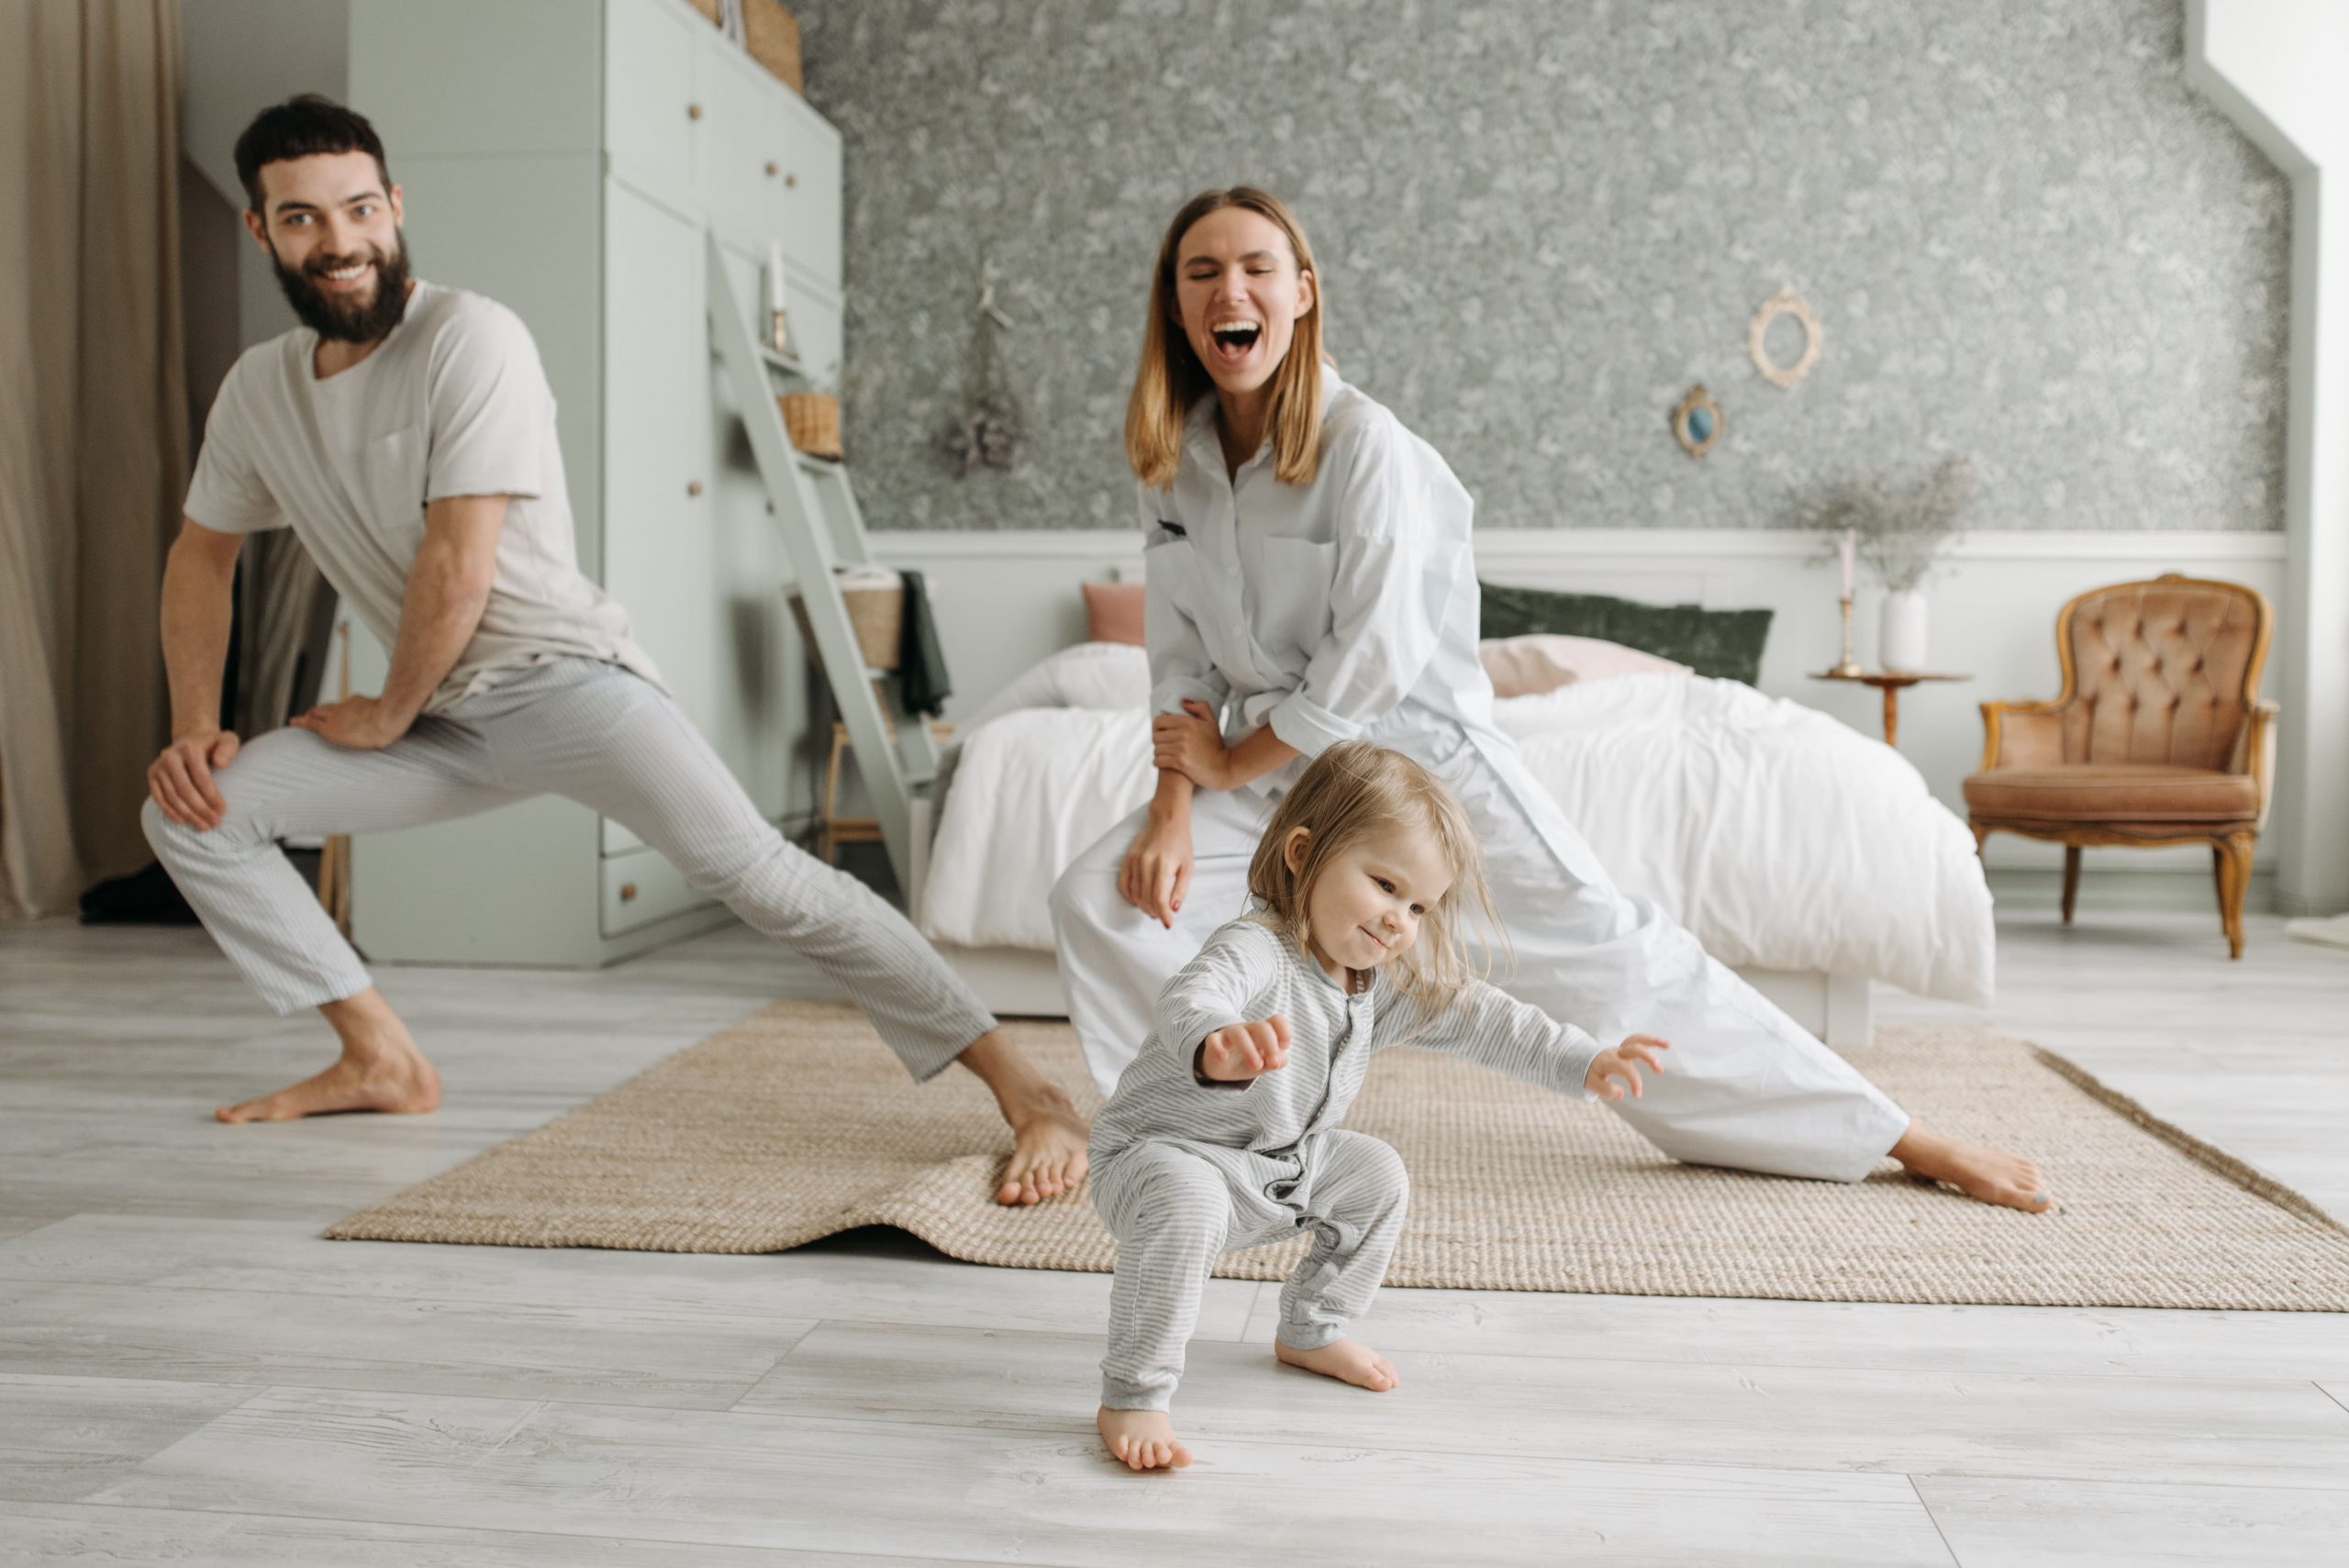 ein Bild, das eine glückliche Familie zeigt, bestehend aus Vater, Kind und Mutter, die gemeinsam Dehnübungen machen - dieses Gefühl möchte therapinum vermitteln